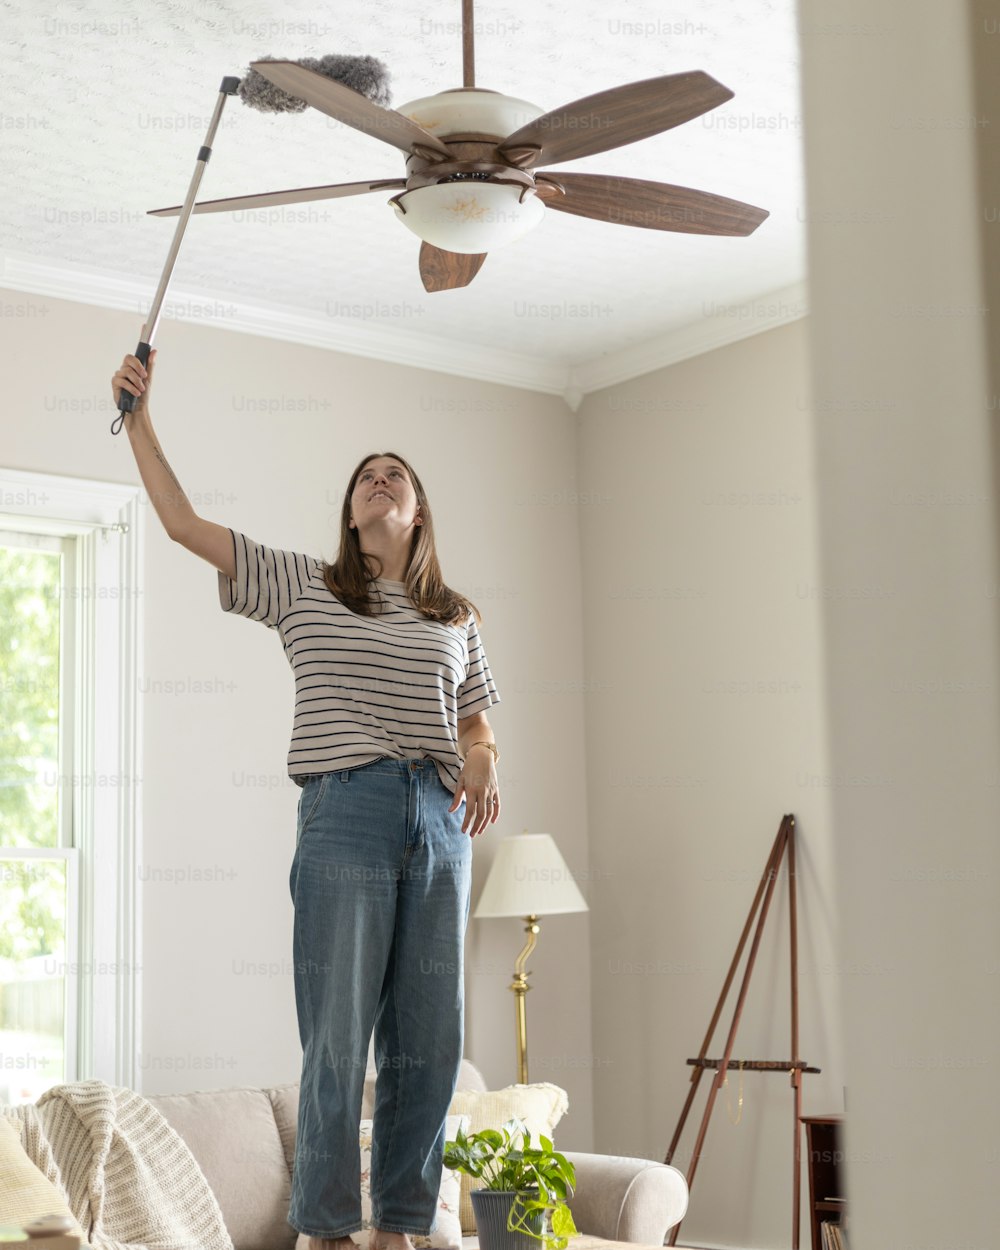 Une femme debout dans un salon tenant un ventilateur de plafond